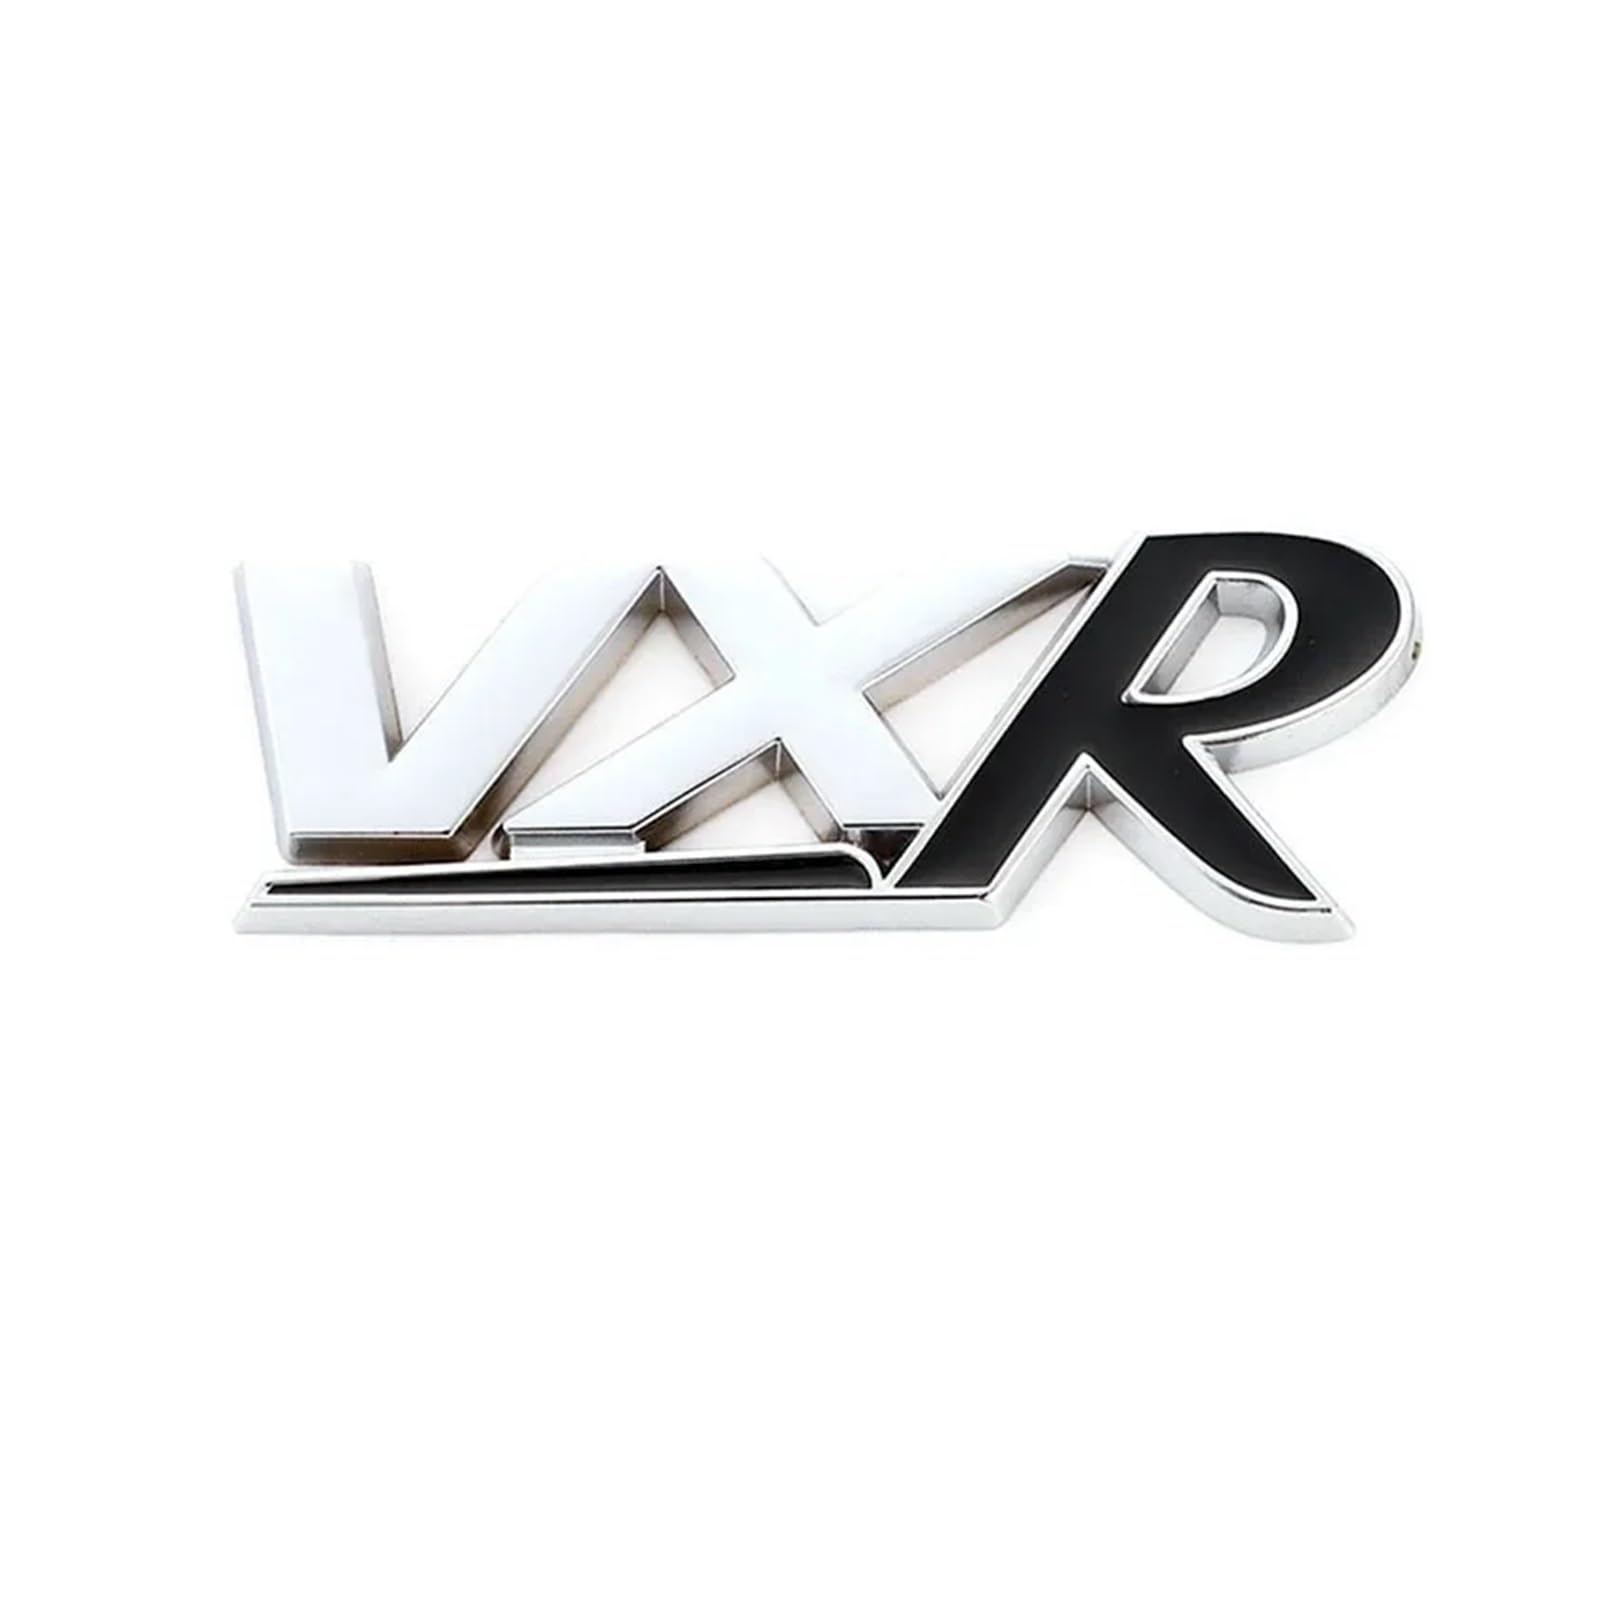 YSRWTBBA 3D-Metall-VXR-Logo, Auto-Frontgrill, Heckkofferraum-Emblem, Aufkleber, kompatibel mit Insignia Zafira Corsa D Astra HJ VXR, einfach abziehen und abzi(Emblem sticker-02 von YSRWTBBA